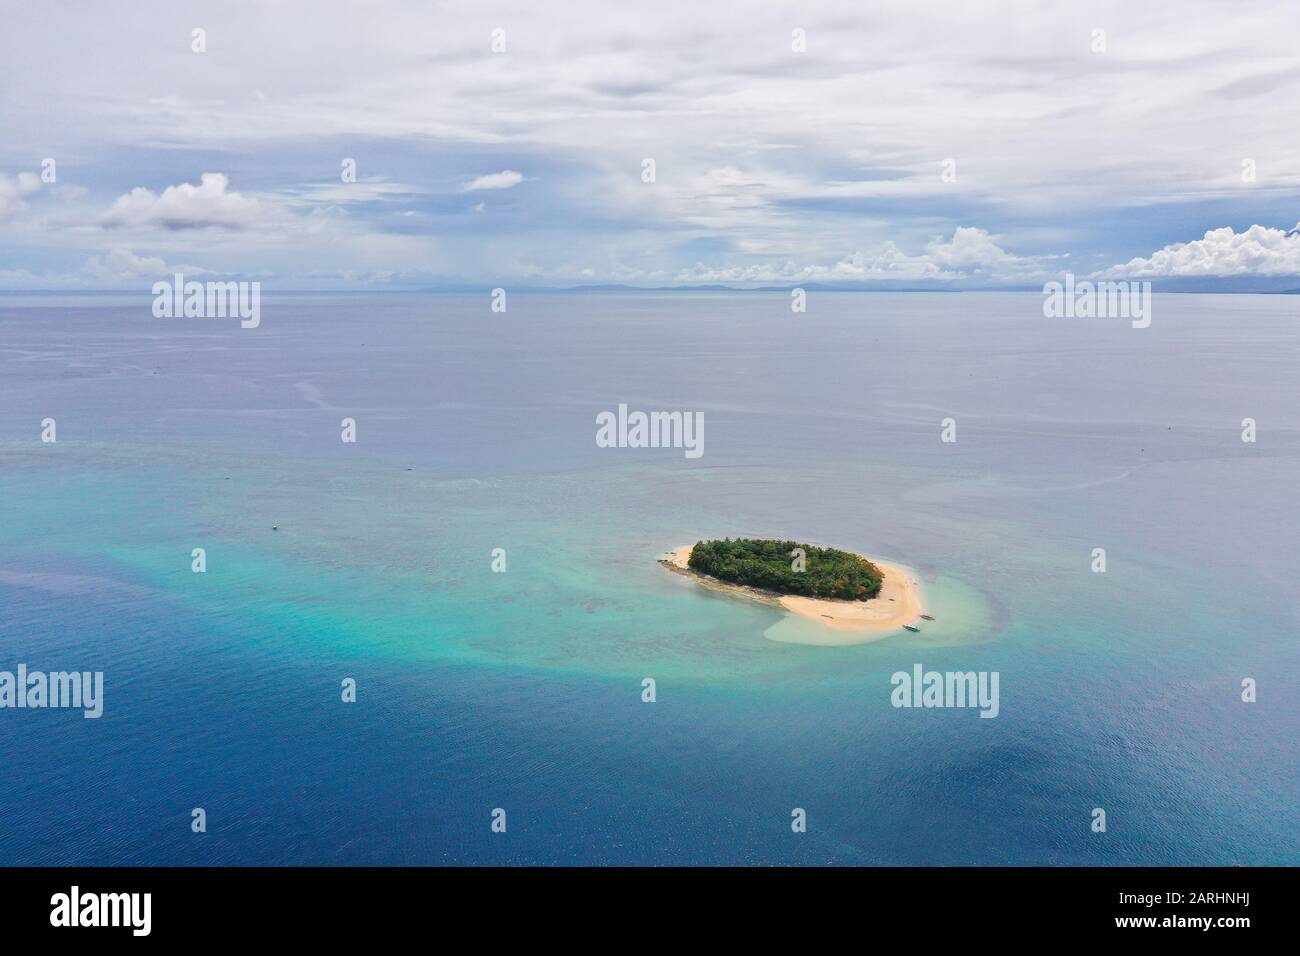 Tropische Insel mit Sandstrand im blauen Meer mit Korallenriffen, Draufsicht. Rosa Insel, Philippinen. Reisekonzept: Tropischer Sandstrand und türkisfarbenes Wasser von oben. Stockfoto